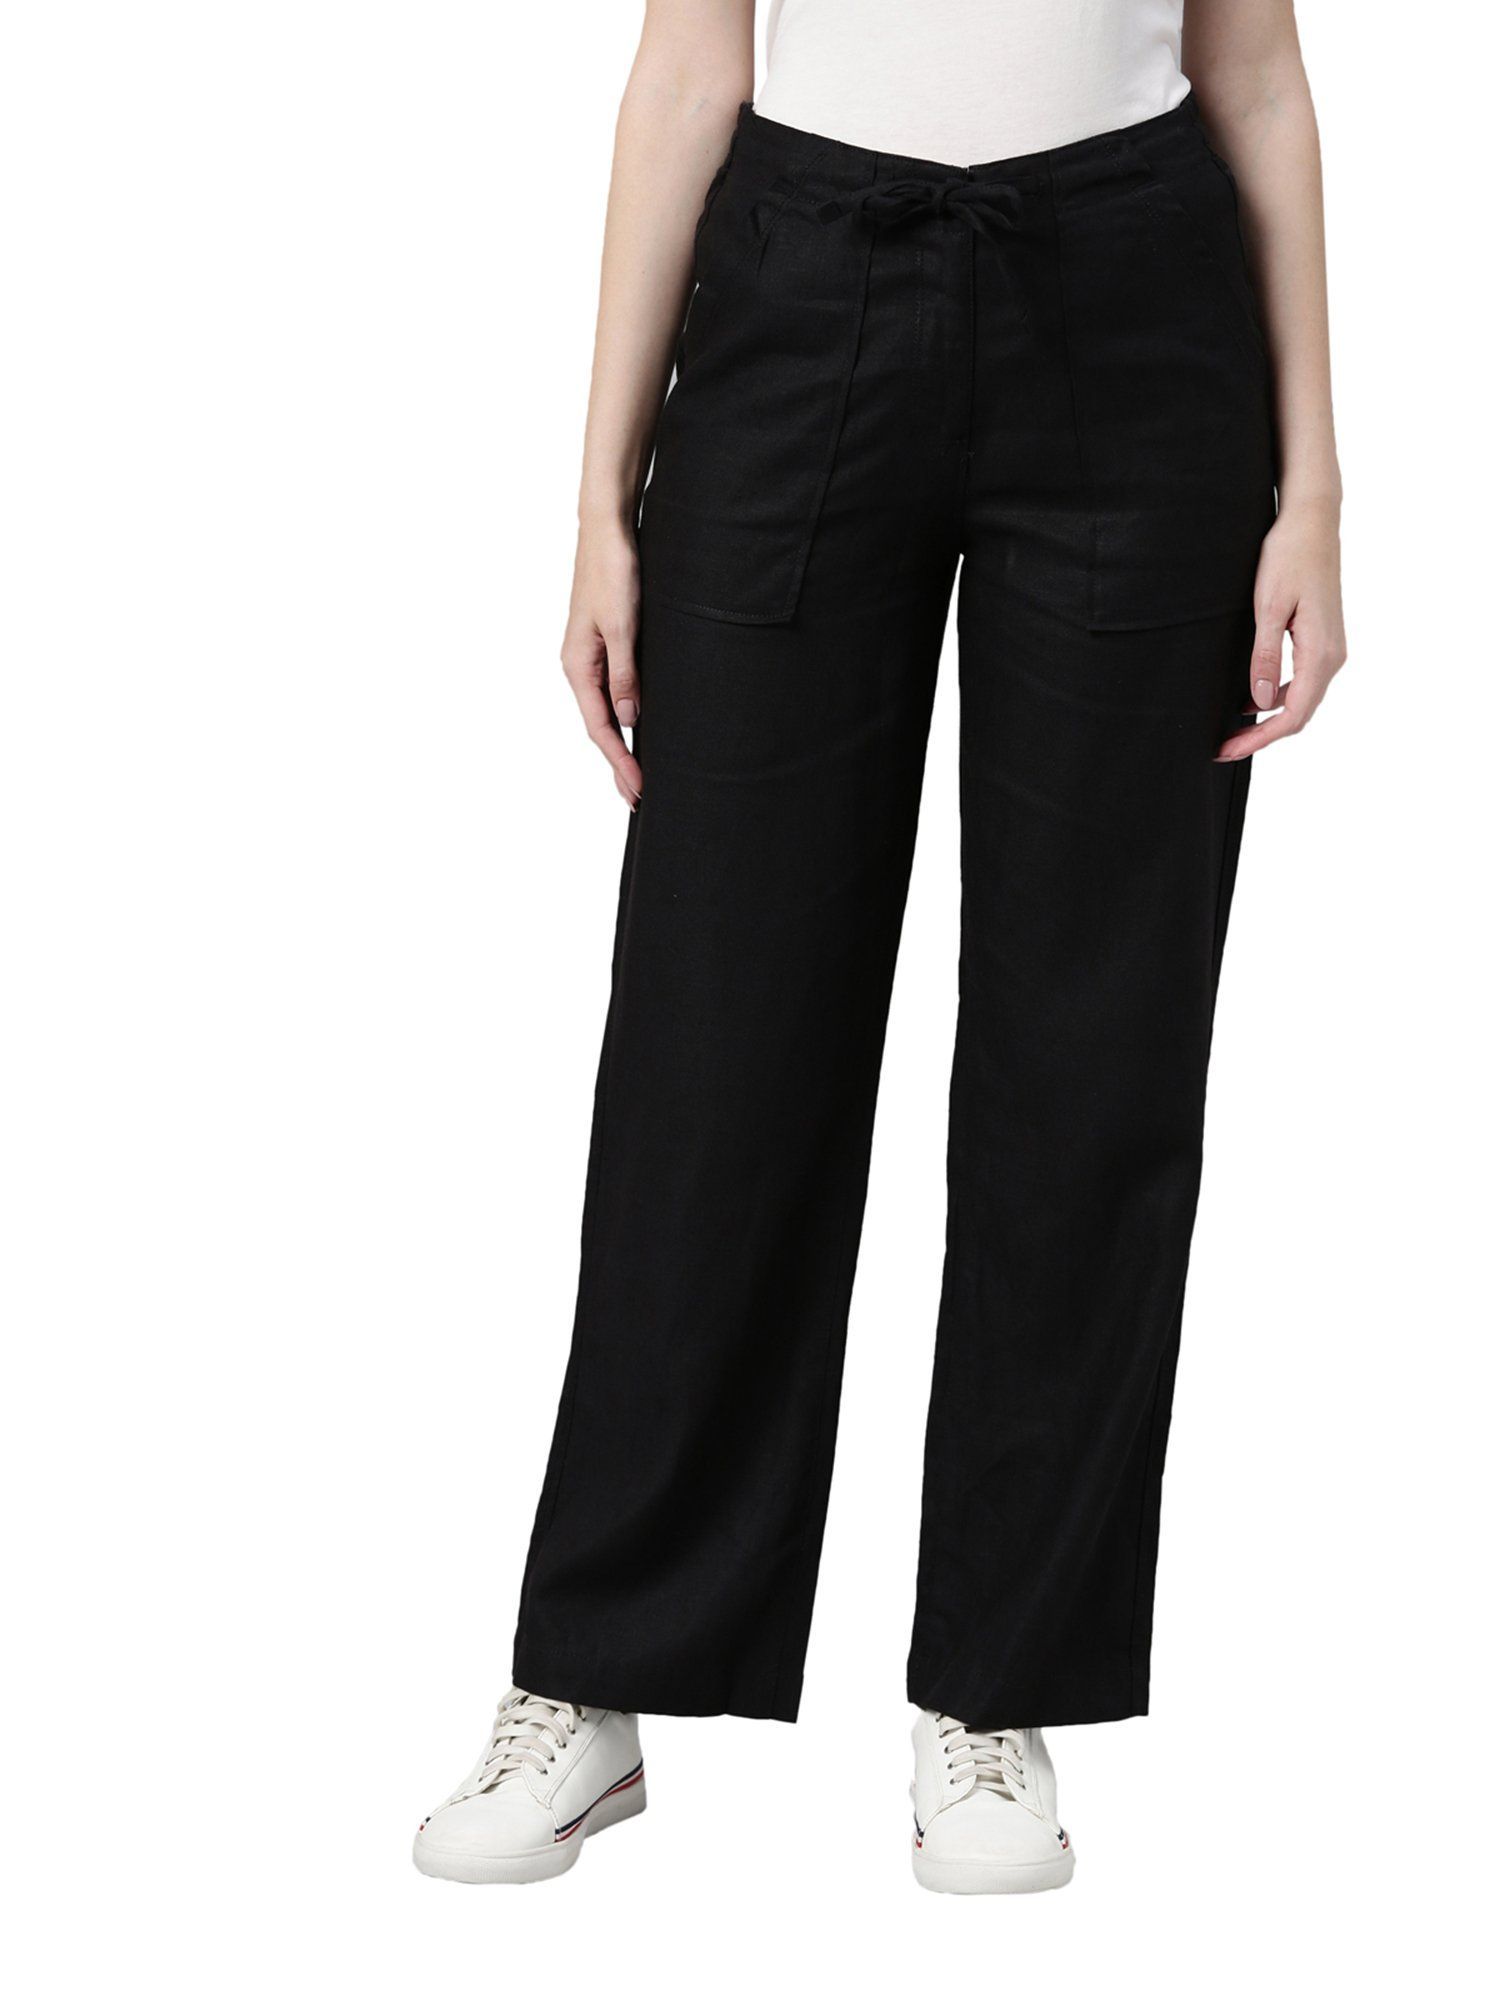 LION Organic Linen Trousers - Black - Komodo Fashion